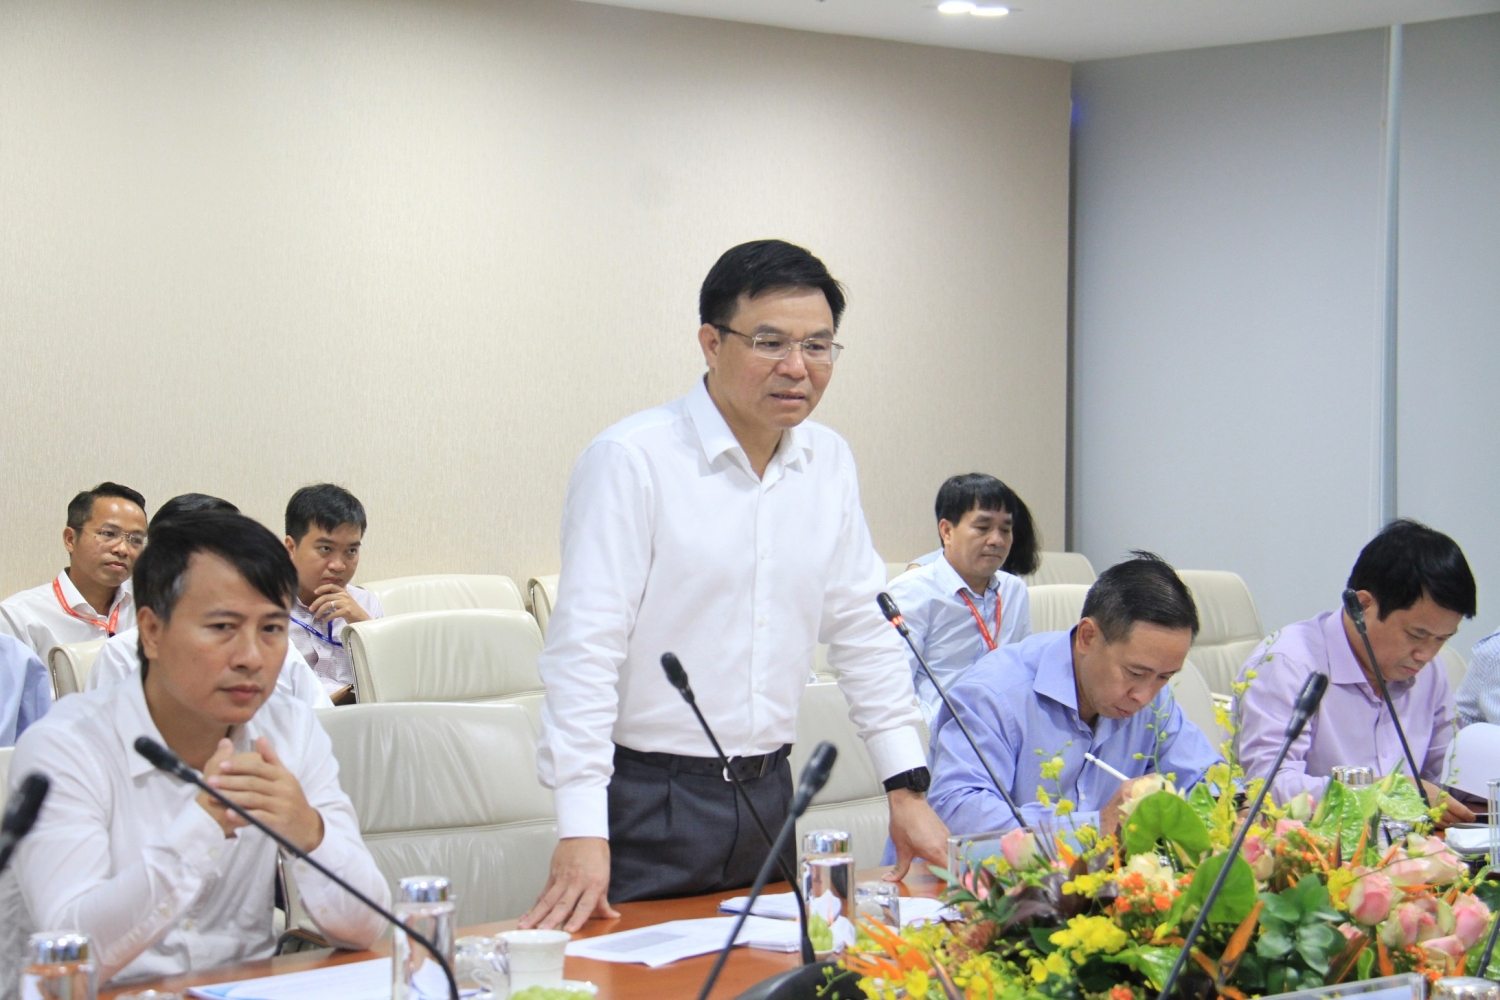 Tổng giám đốc PVN Lê Mạnh Hùng nhấn mạnh PV GAS luôn là niềm tự hào của Tập đoàn trong những năm qua